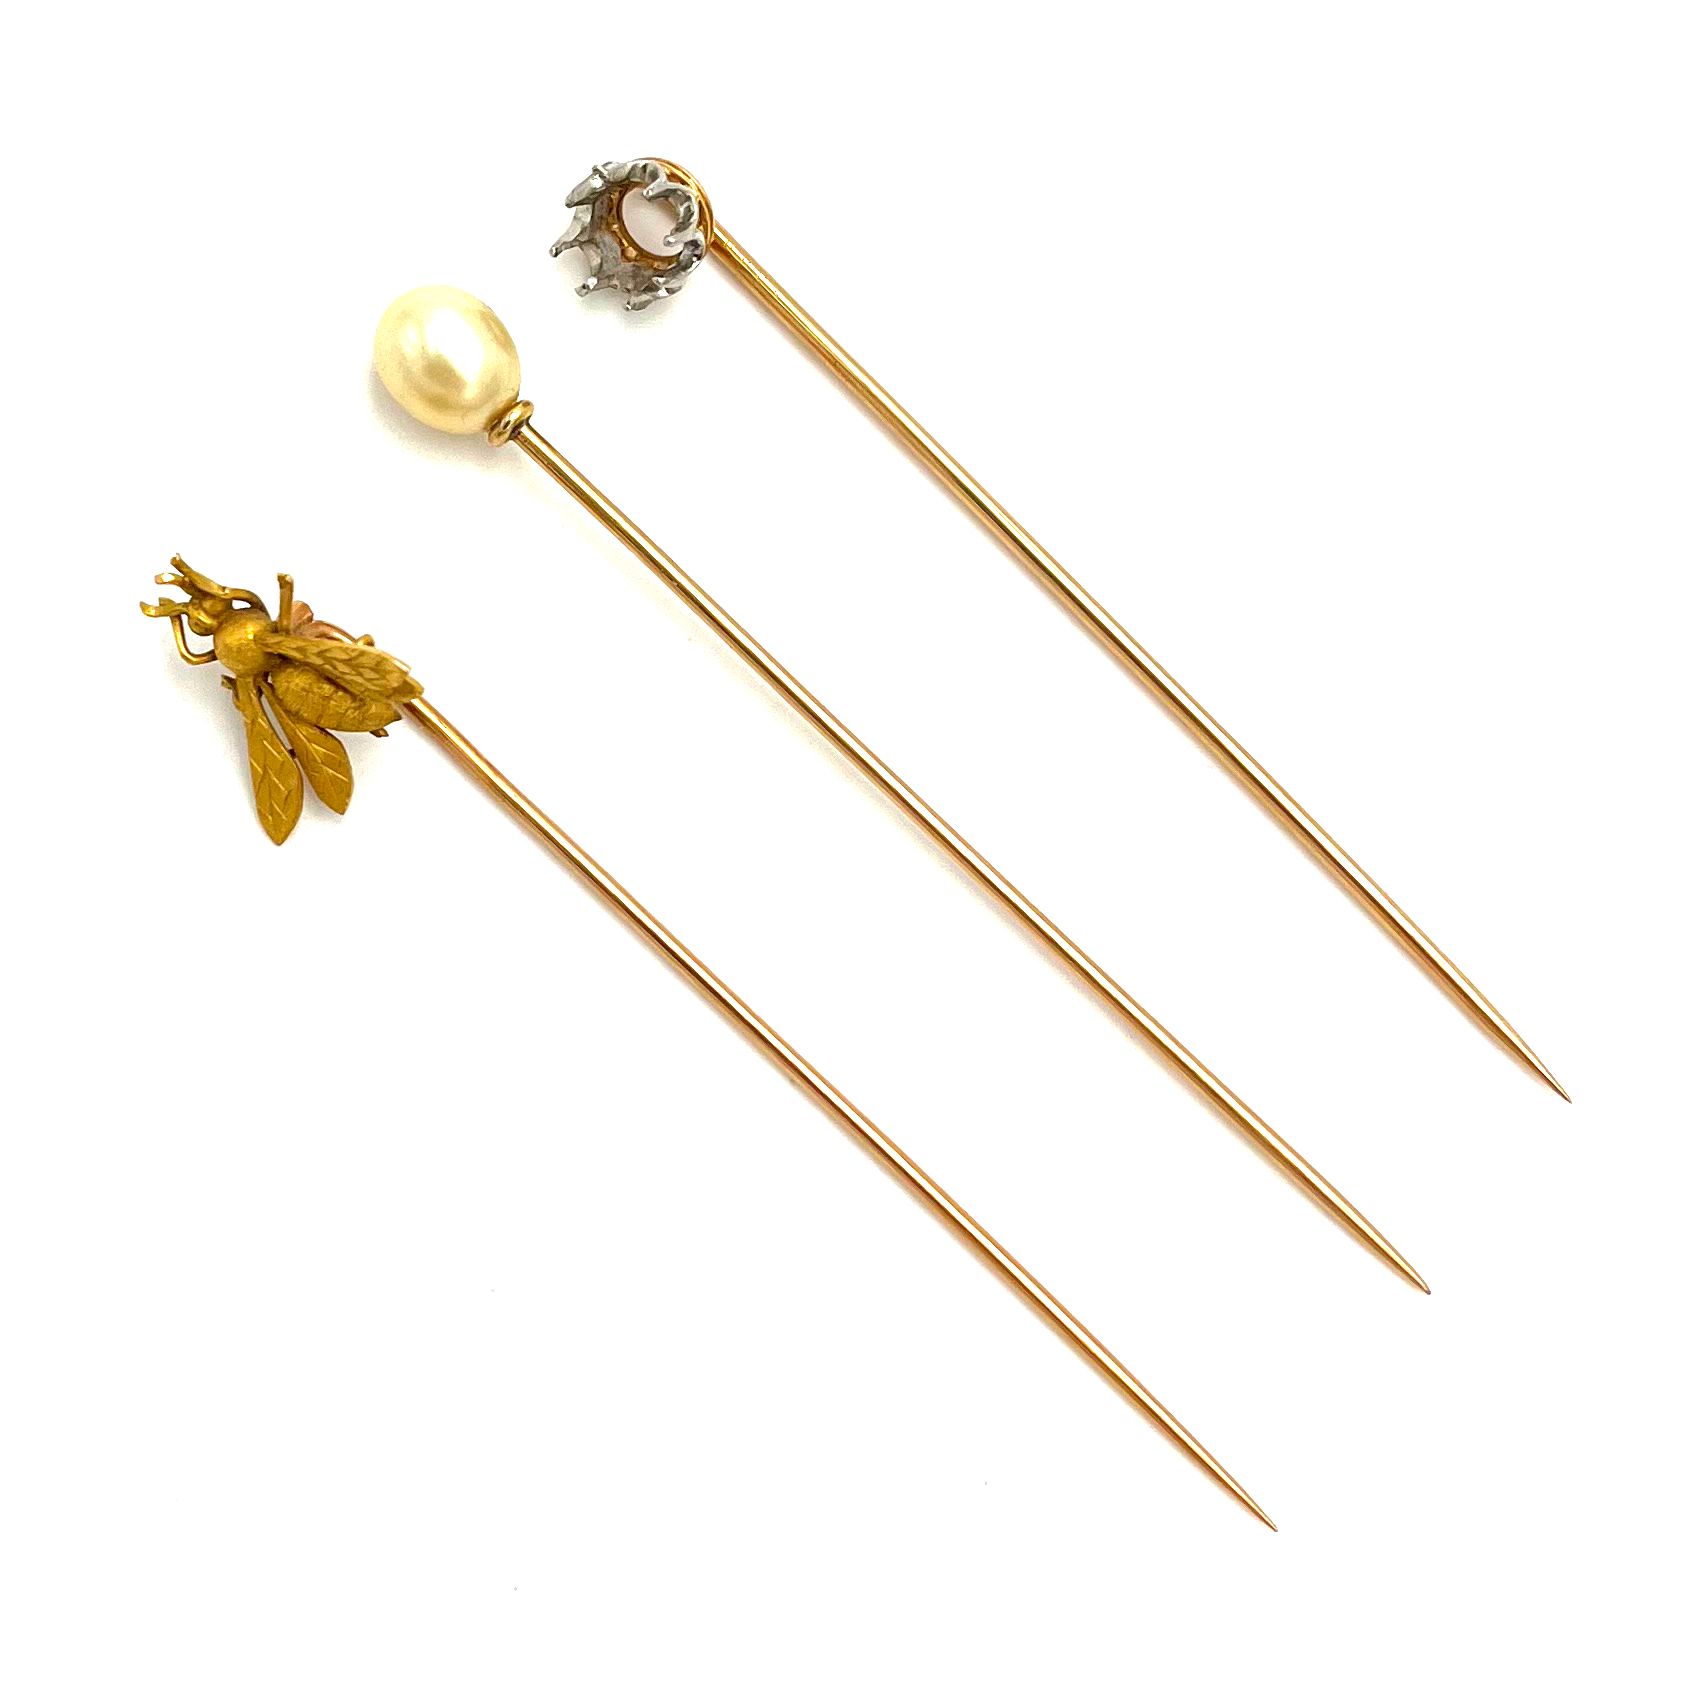 Null 750密尔黄金领带针，饰有一只蜜蜂。附有两个750密耳黄金领带针，其中一个带有珍珠。 毛重7.3克